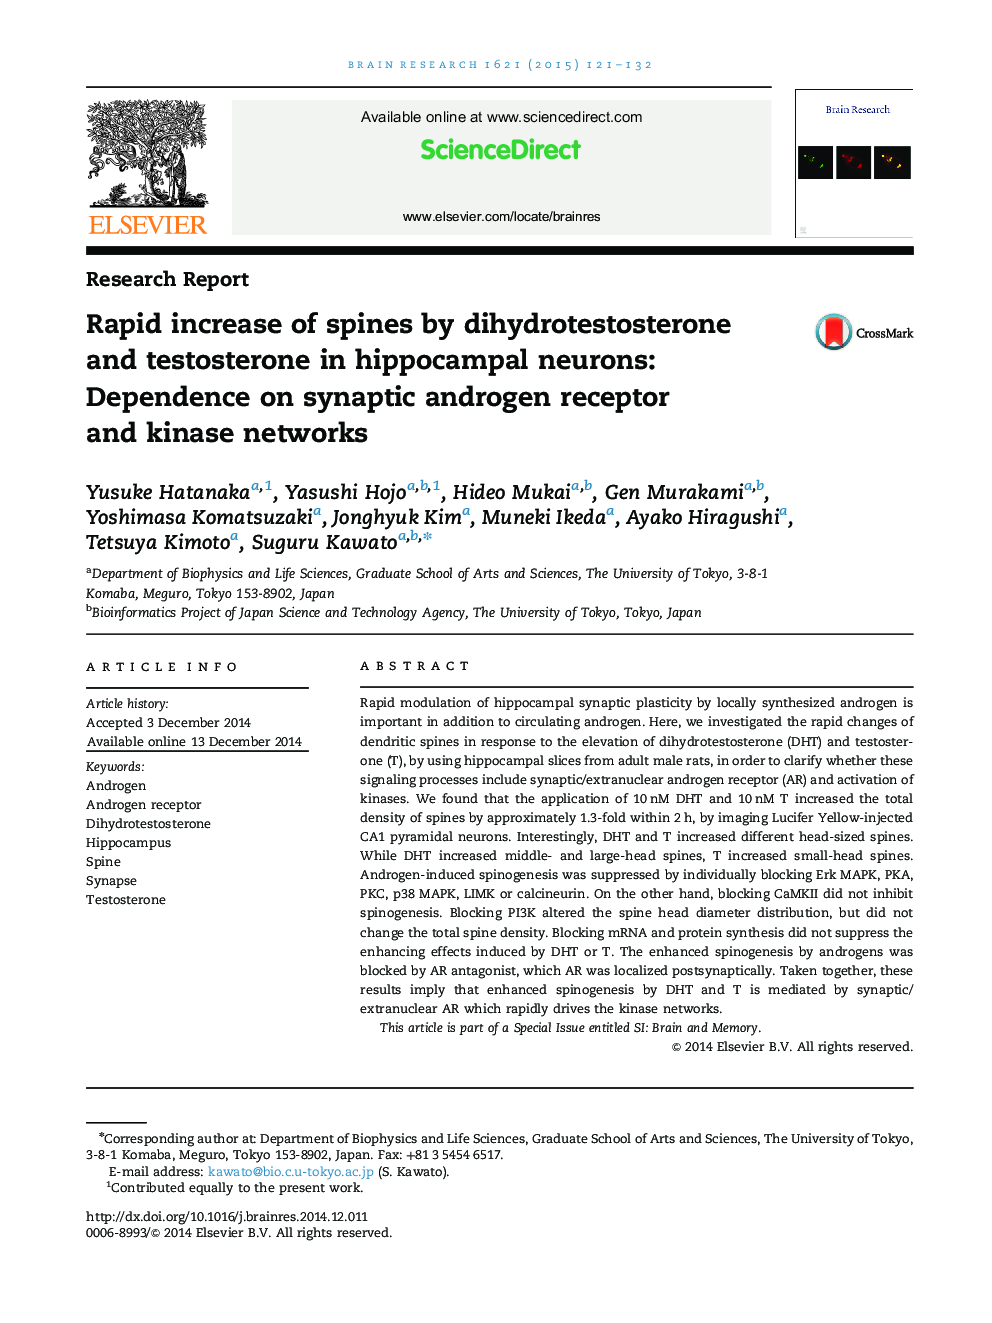 گزارش تحقیقاتی افزایش میزان اسپاین ها توسط دی هیدروتستوسترون و تستوسترون در نورون های هیپوکامپ: وابستگی به شبکه های گیرنده آندروژن سیناپسی و کیناز 